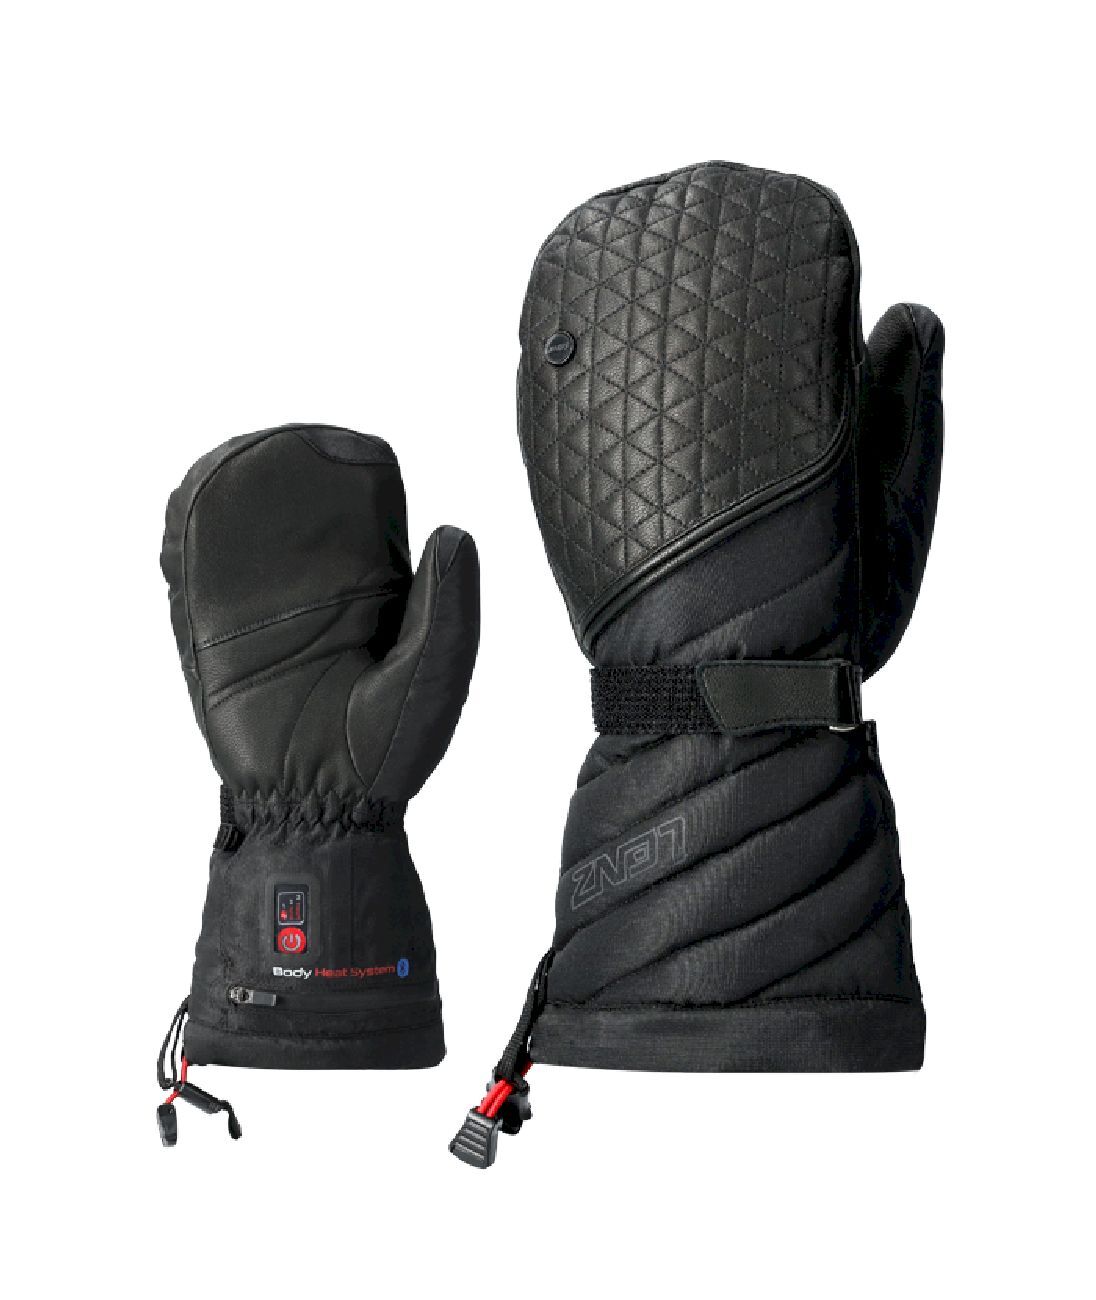 Lenz Heat Glove 6.0 Finger Cap Mittens - Handskar - Dam